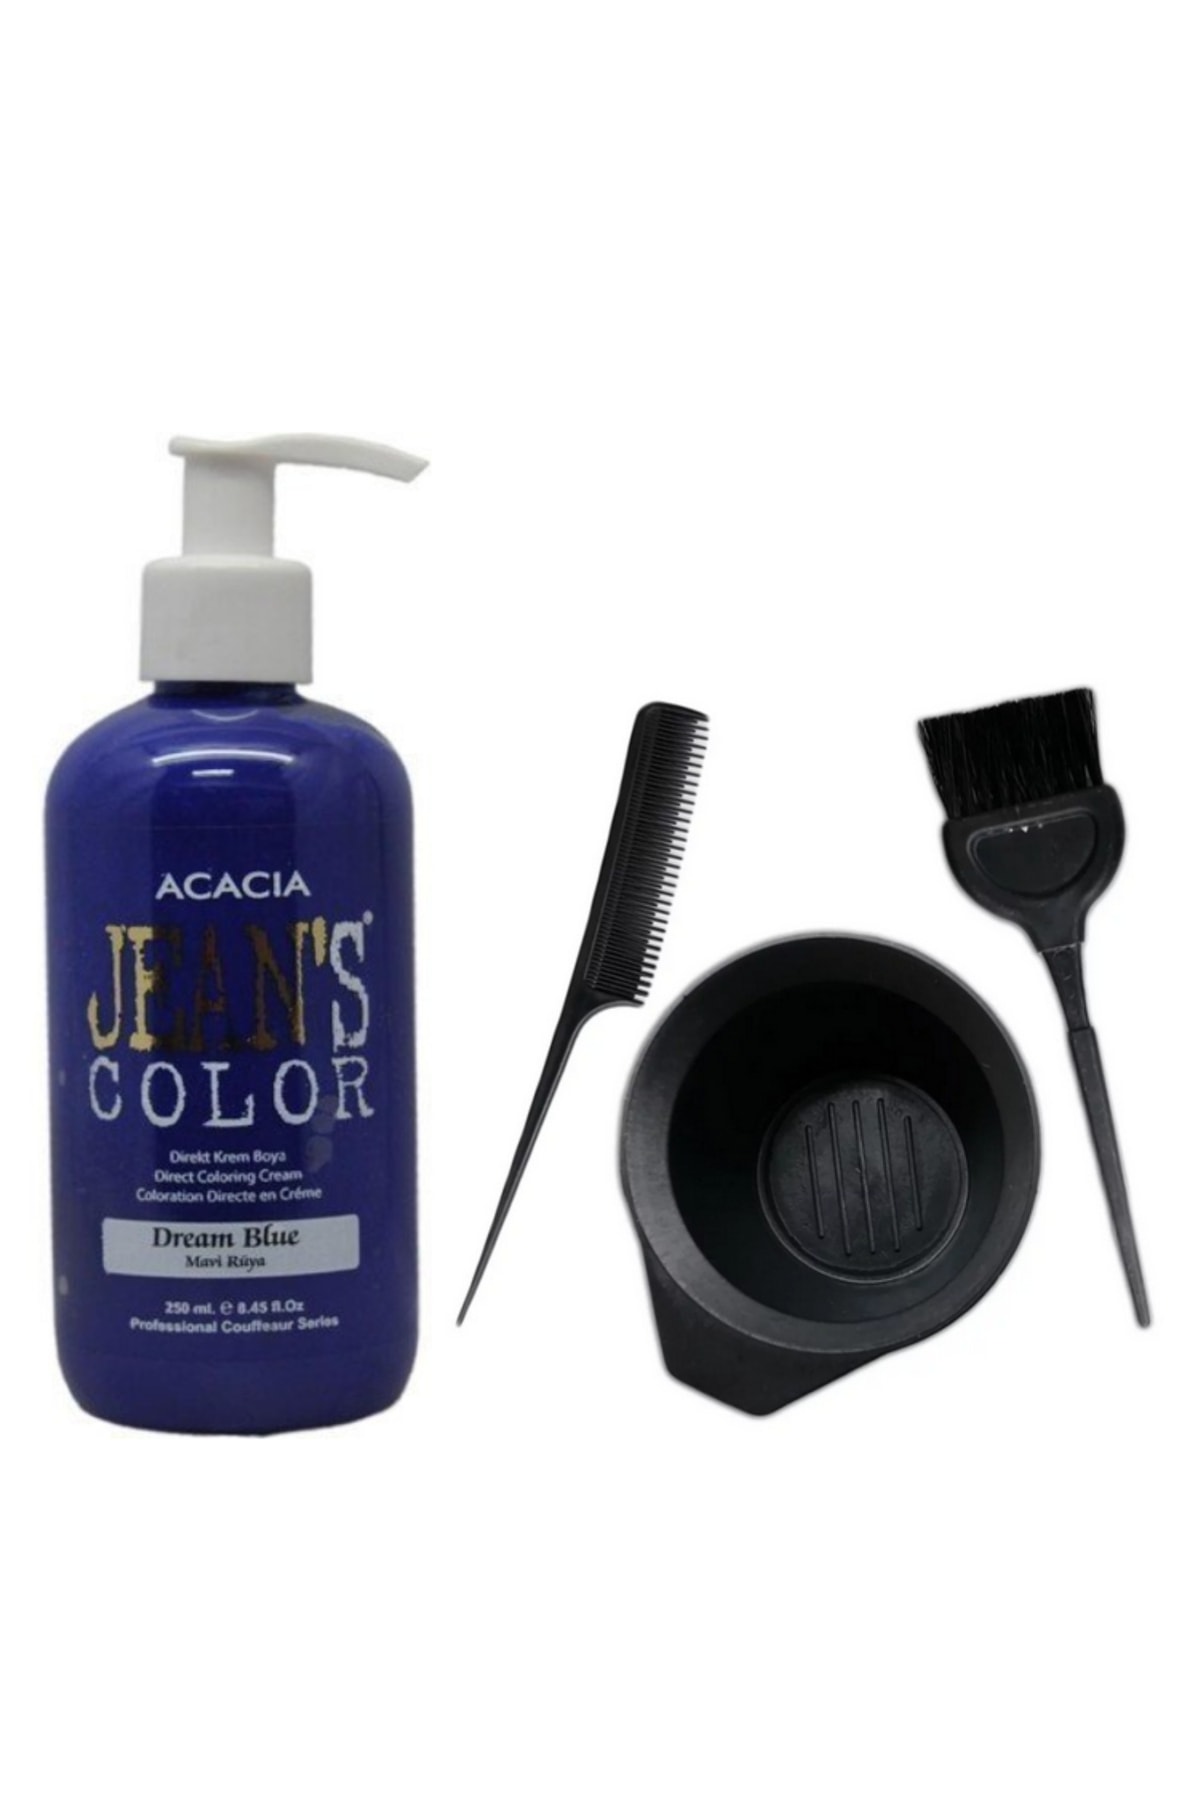 Acacia Jeans Color Saç Boyası Mavi Rüya 250ml Ve Saç Boya Kabı Seti